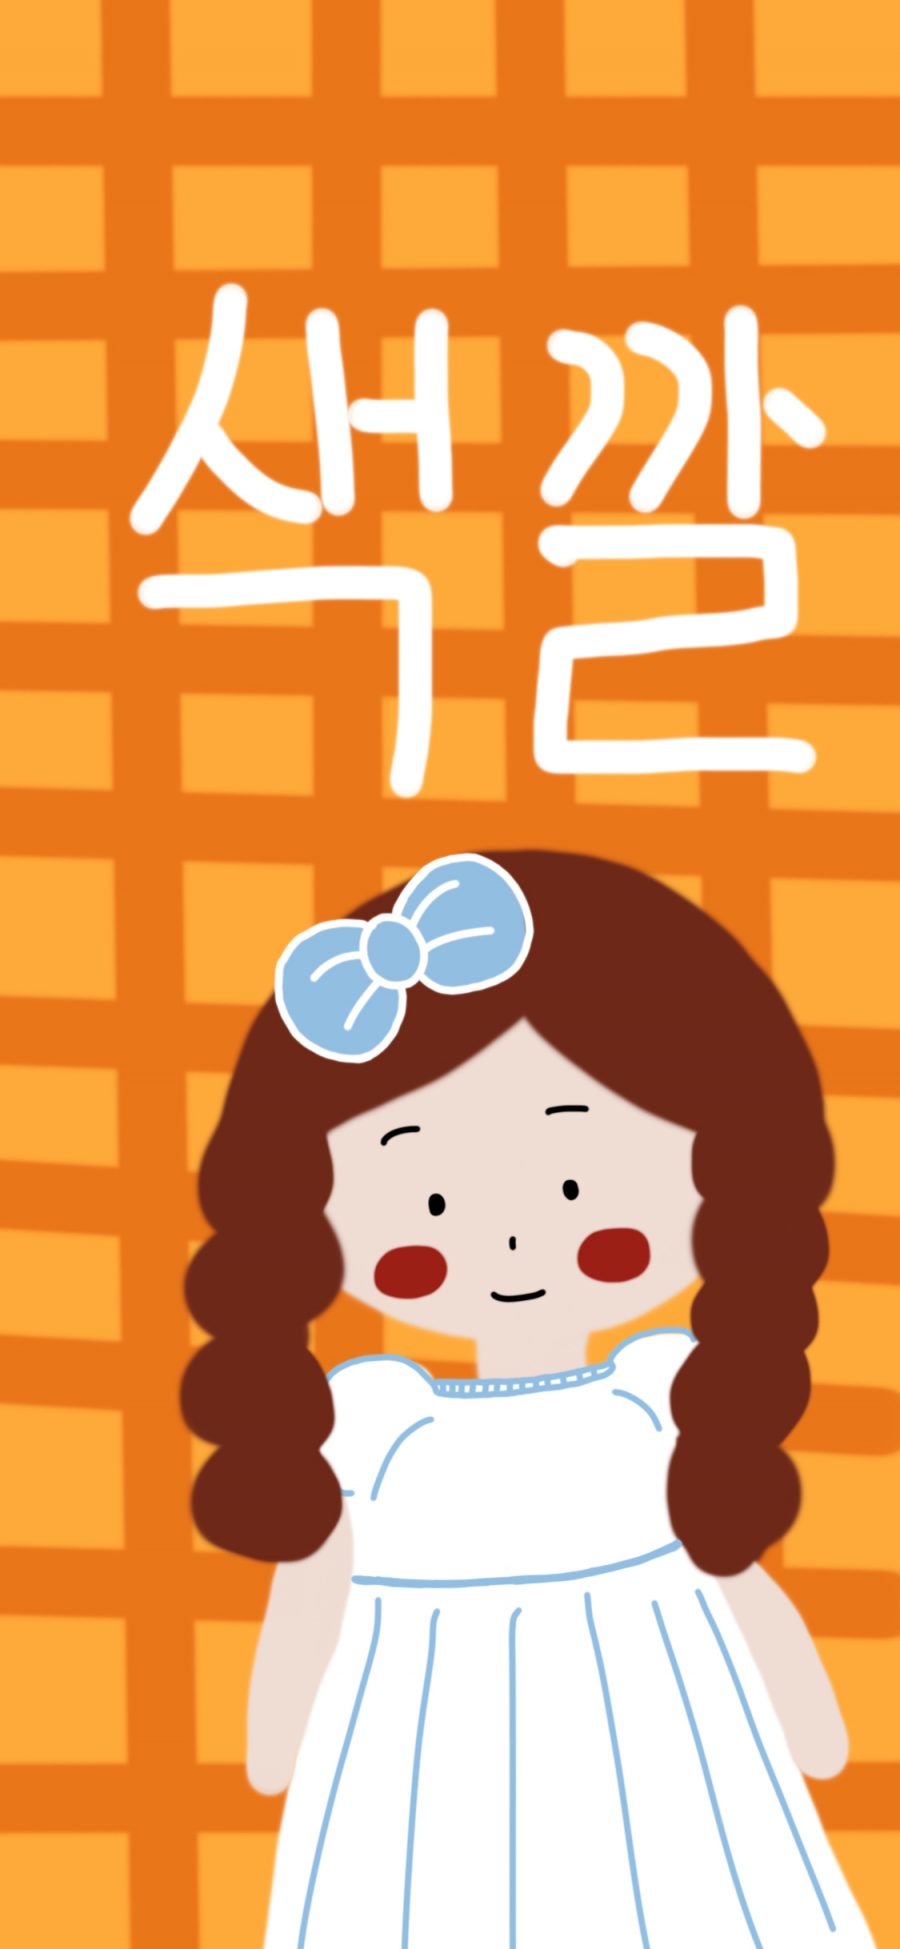 [2436×1125]情侣 壁纸 女孩 韩文 苹果手机动漫壁纸图片